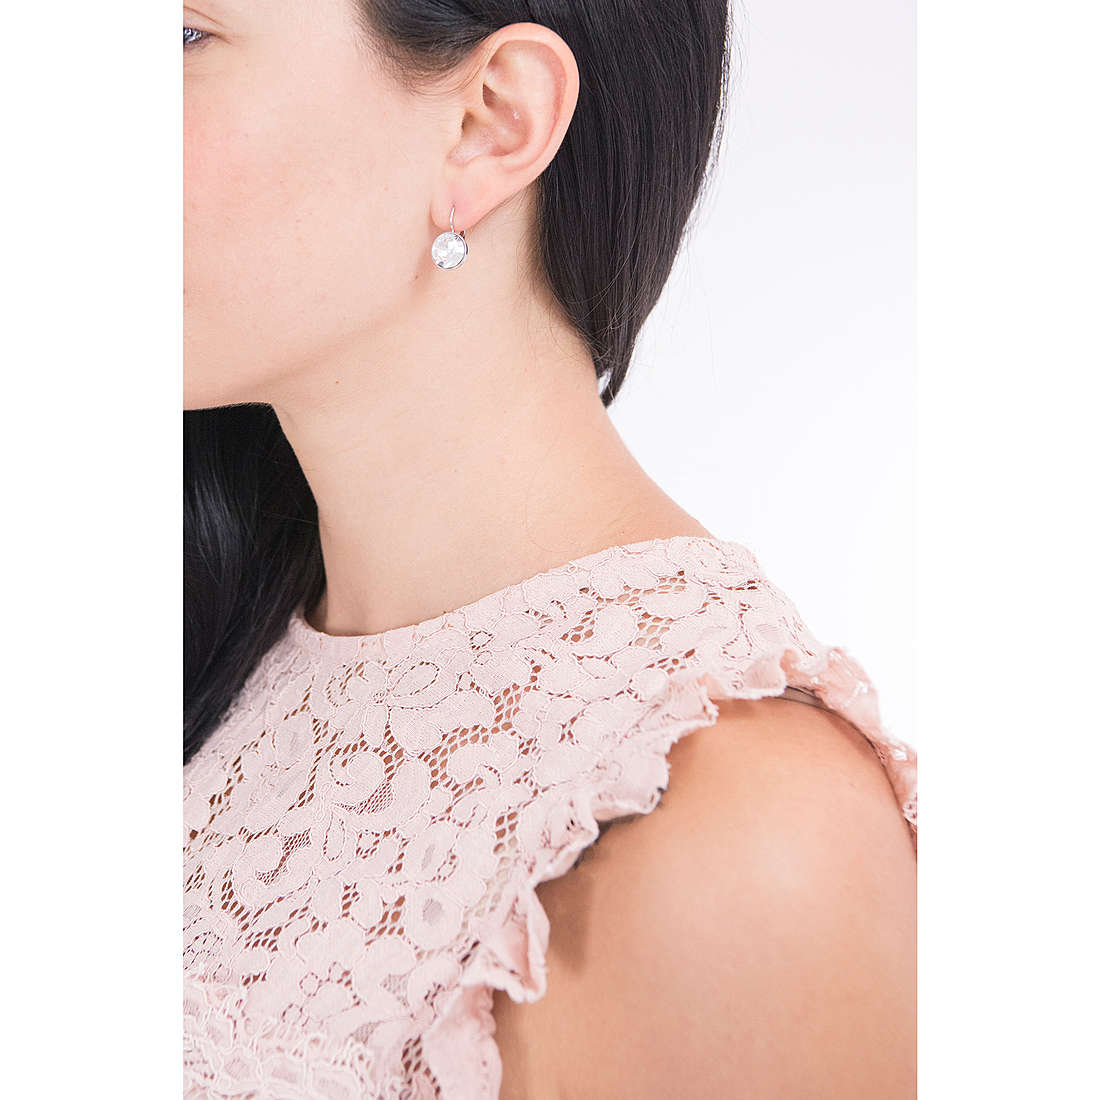 Swarovski earrings Bella woman 5085608 wearing